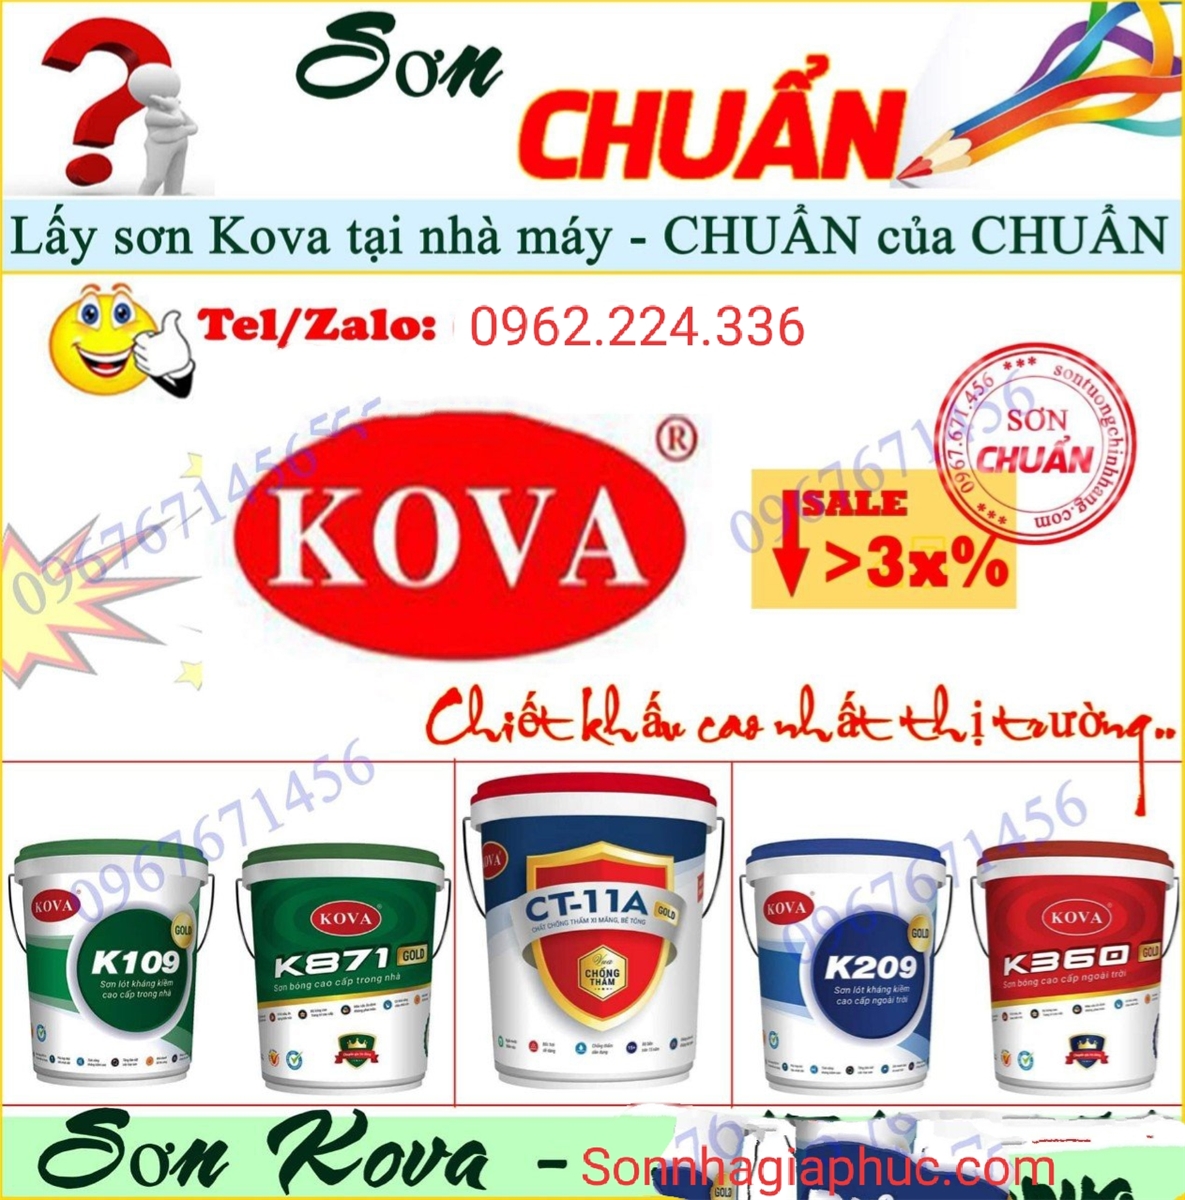 Kova là thương hiệu sơn của công ty nào?